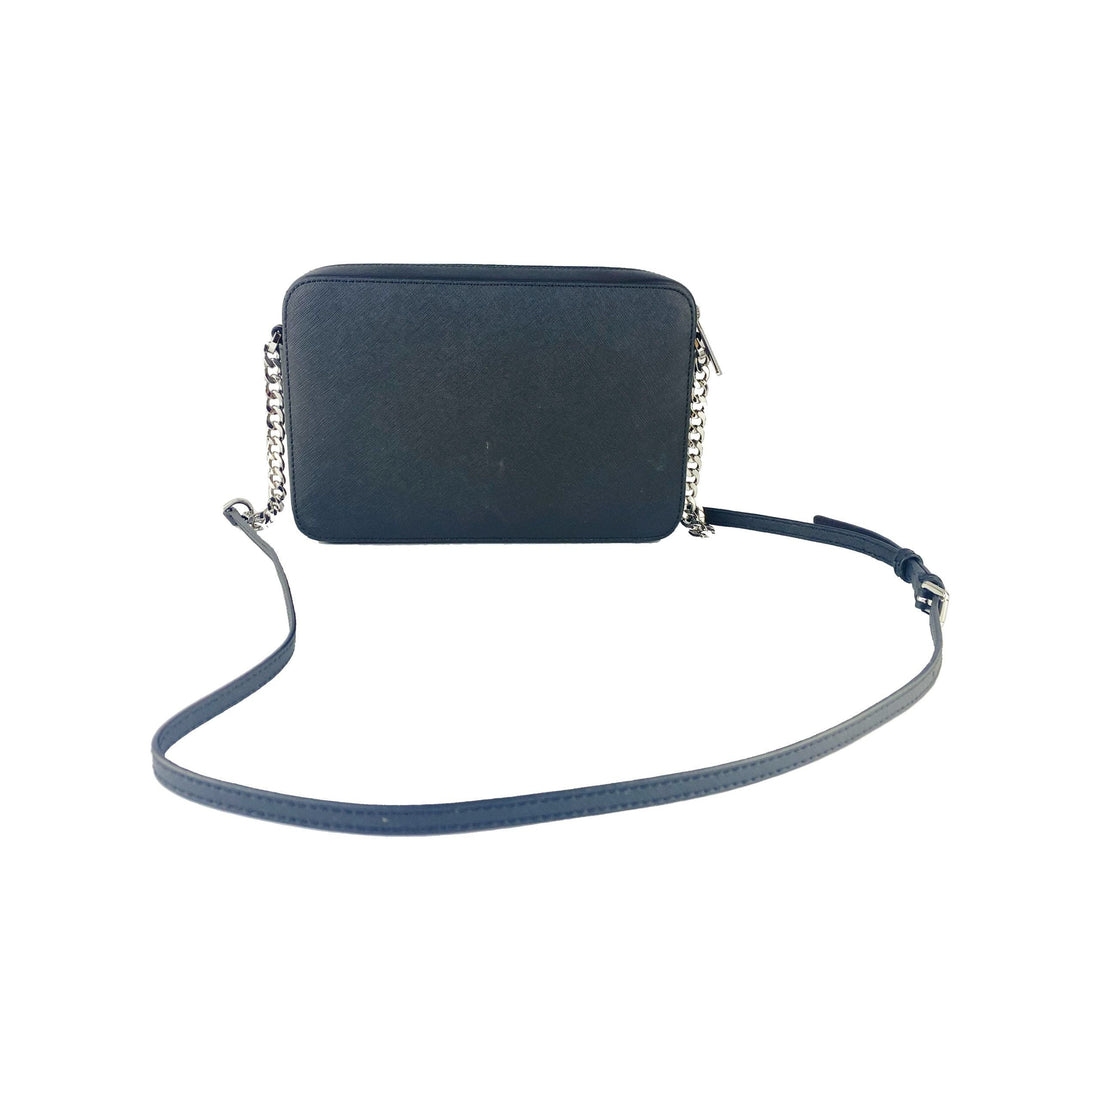 Michael Kors Jet Set Large East West Saffiano Leather Crossbody Bag Handbag (Black Solid/Silver Hardware)